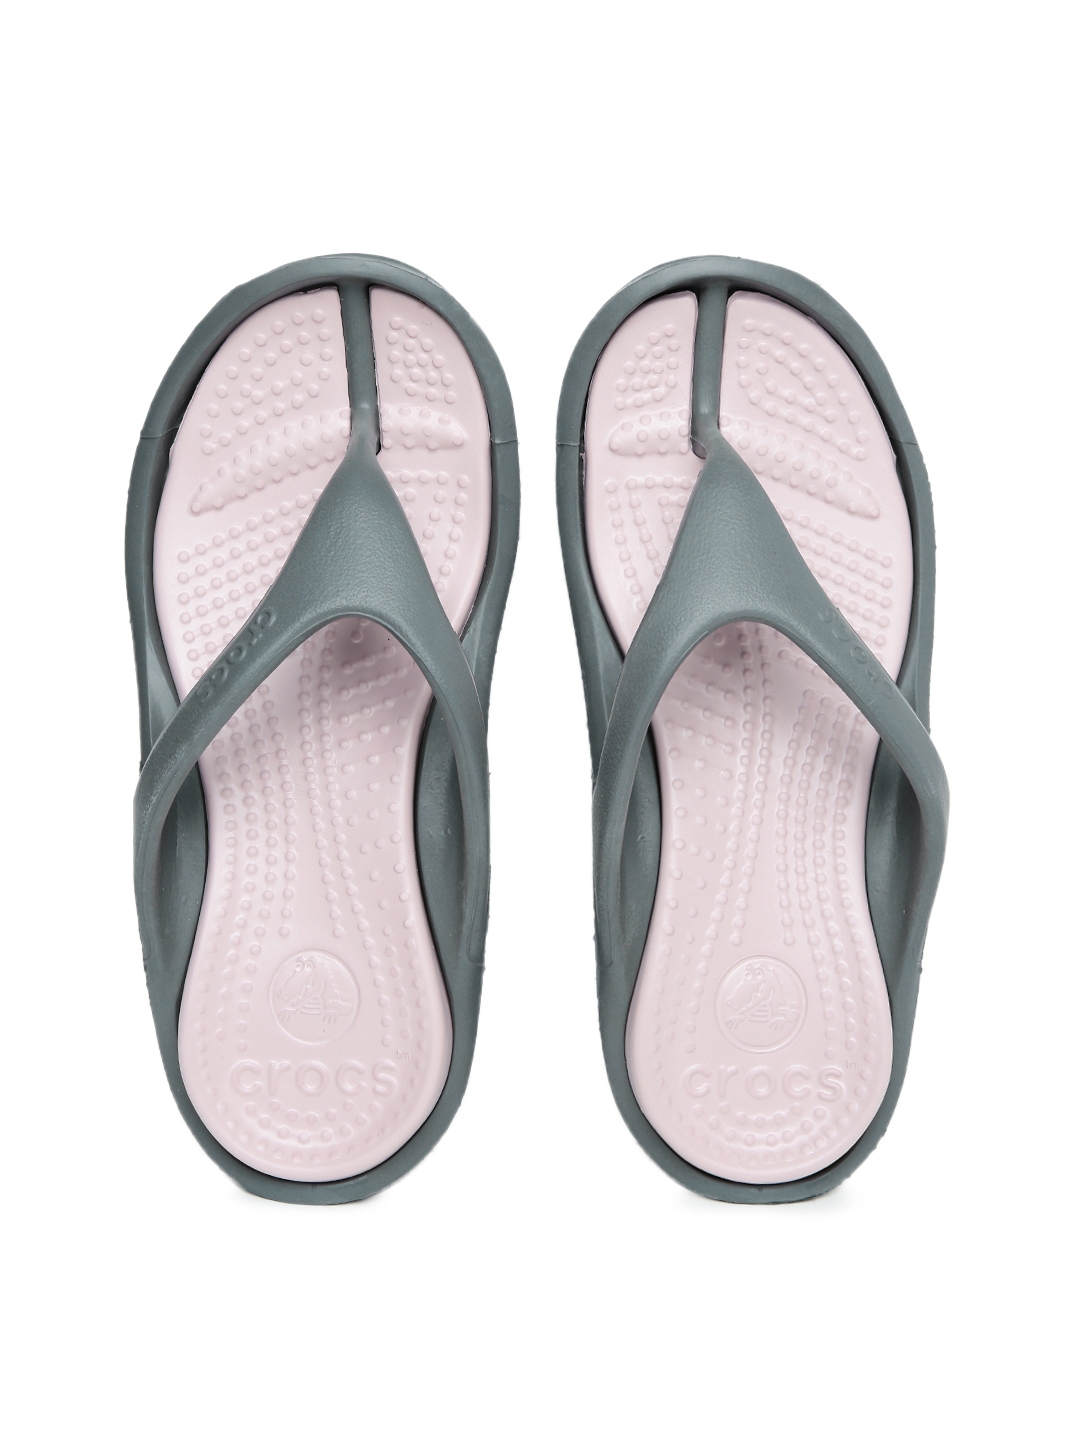 Buy Crocs Unisex Grey & Pink Athens II Flip Flops - Flip Flops for ...